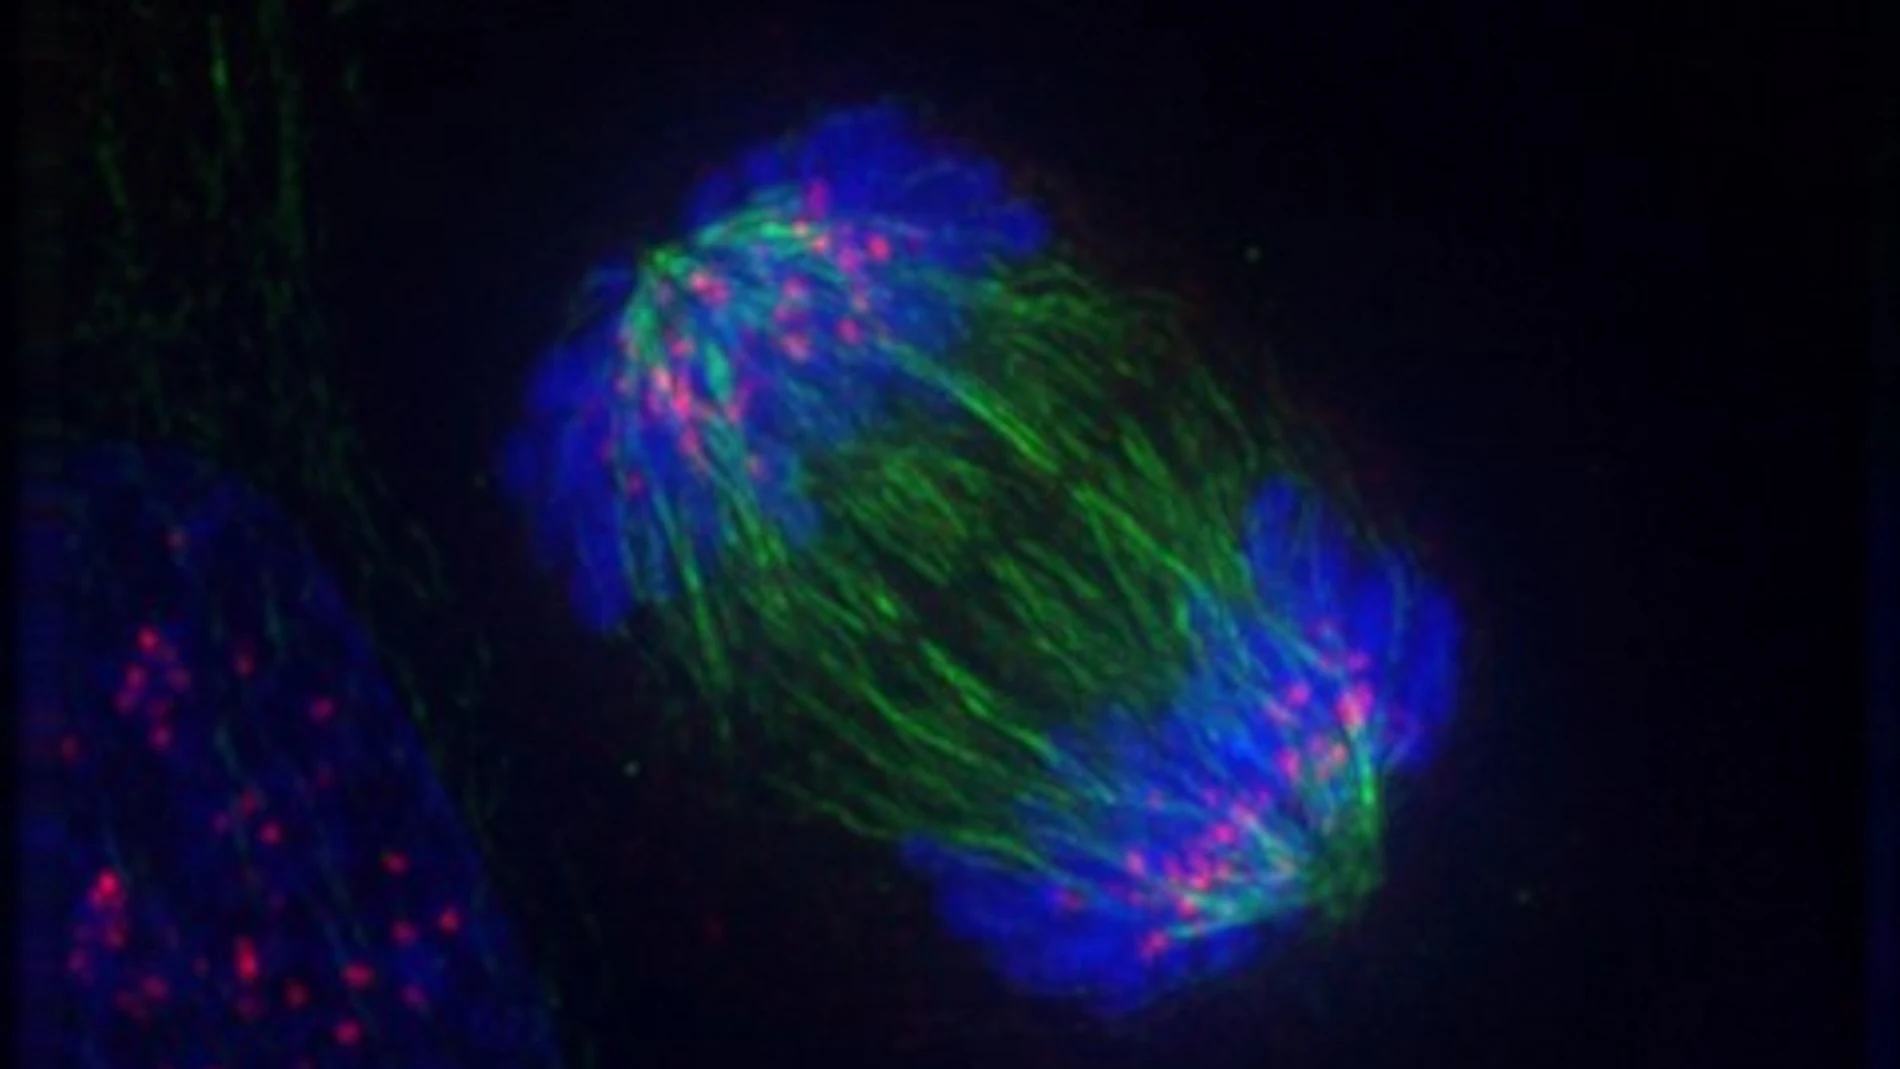 Huso mitótico durante la anafase de una célula en división vista con técnicas de inmunofluorescencia.